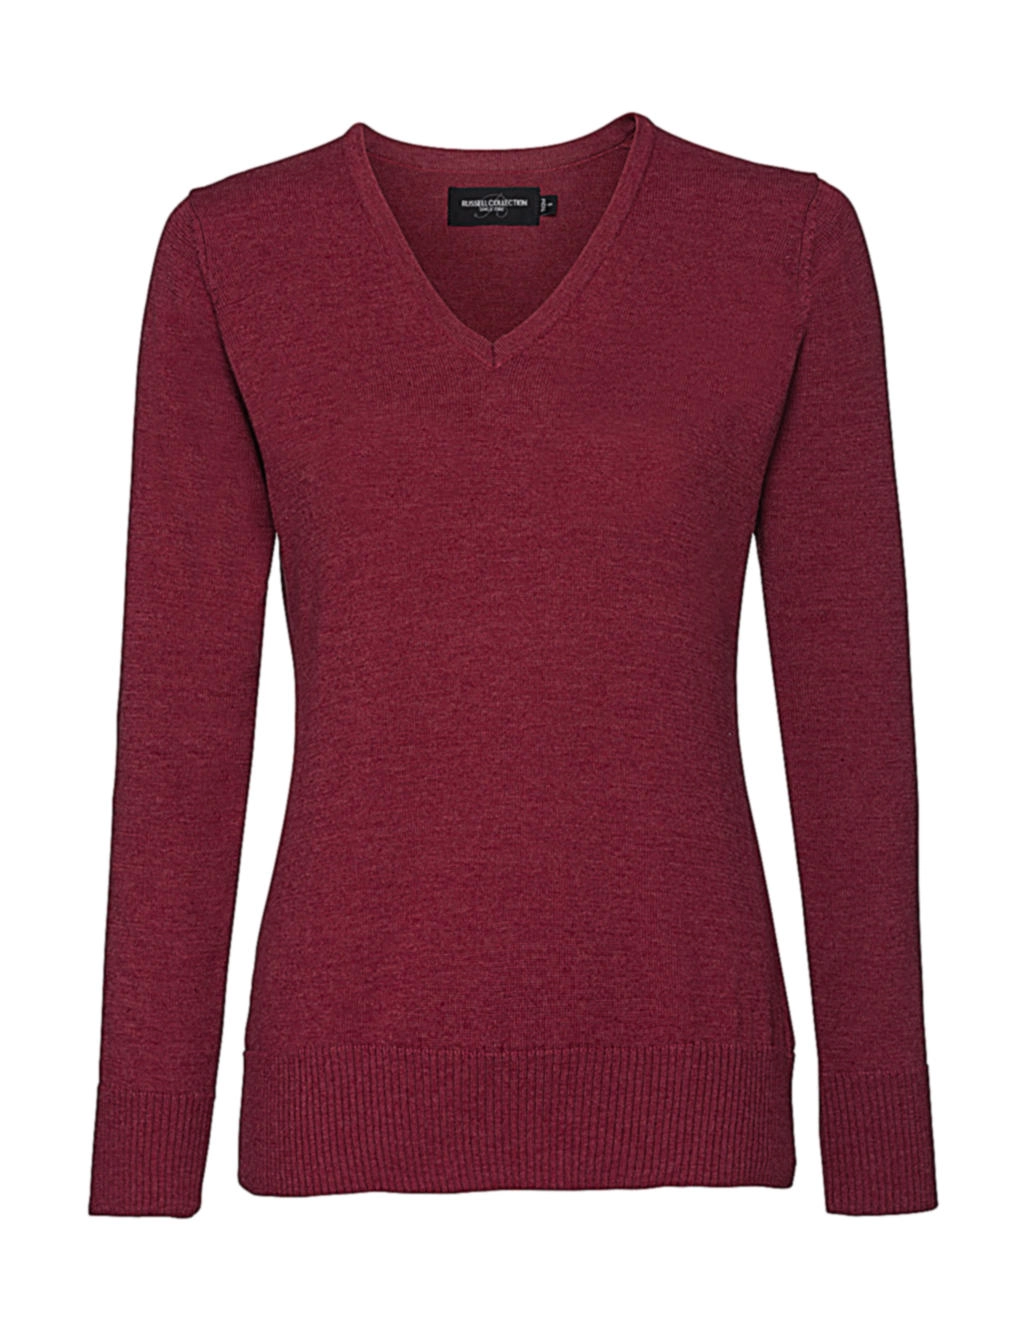 Ladies’ V-Neck Knitted Pullover zum Besticken und Bedrucken in der Farbe Cranberry Marl mit Ihren Logo, Schriftzug oder Motiv.